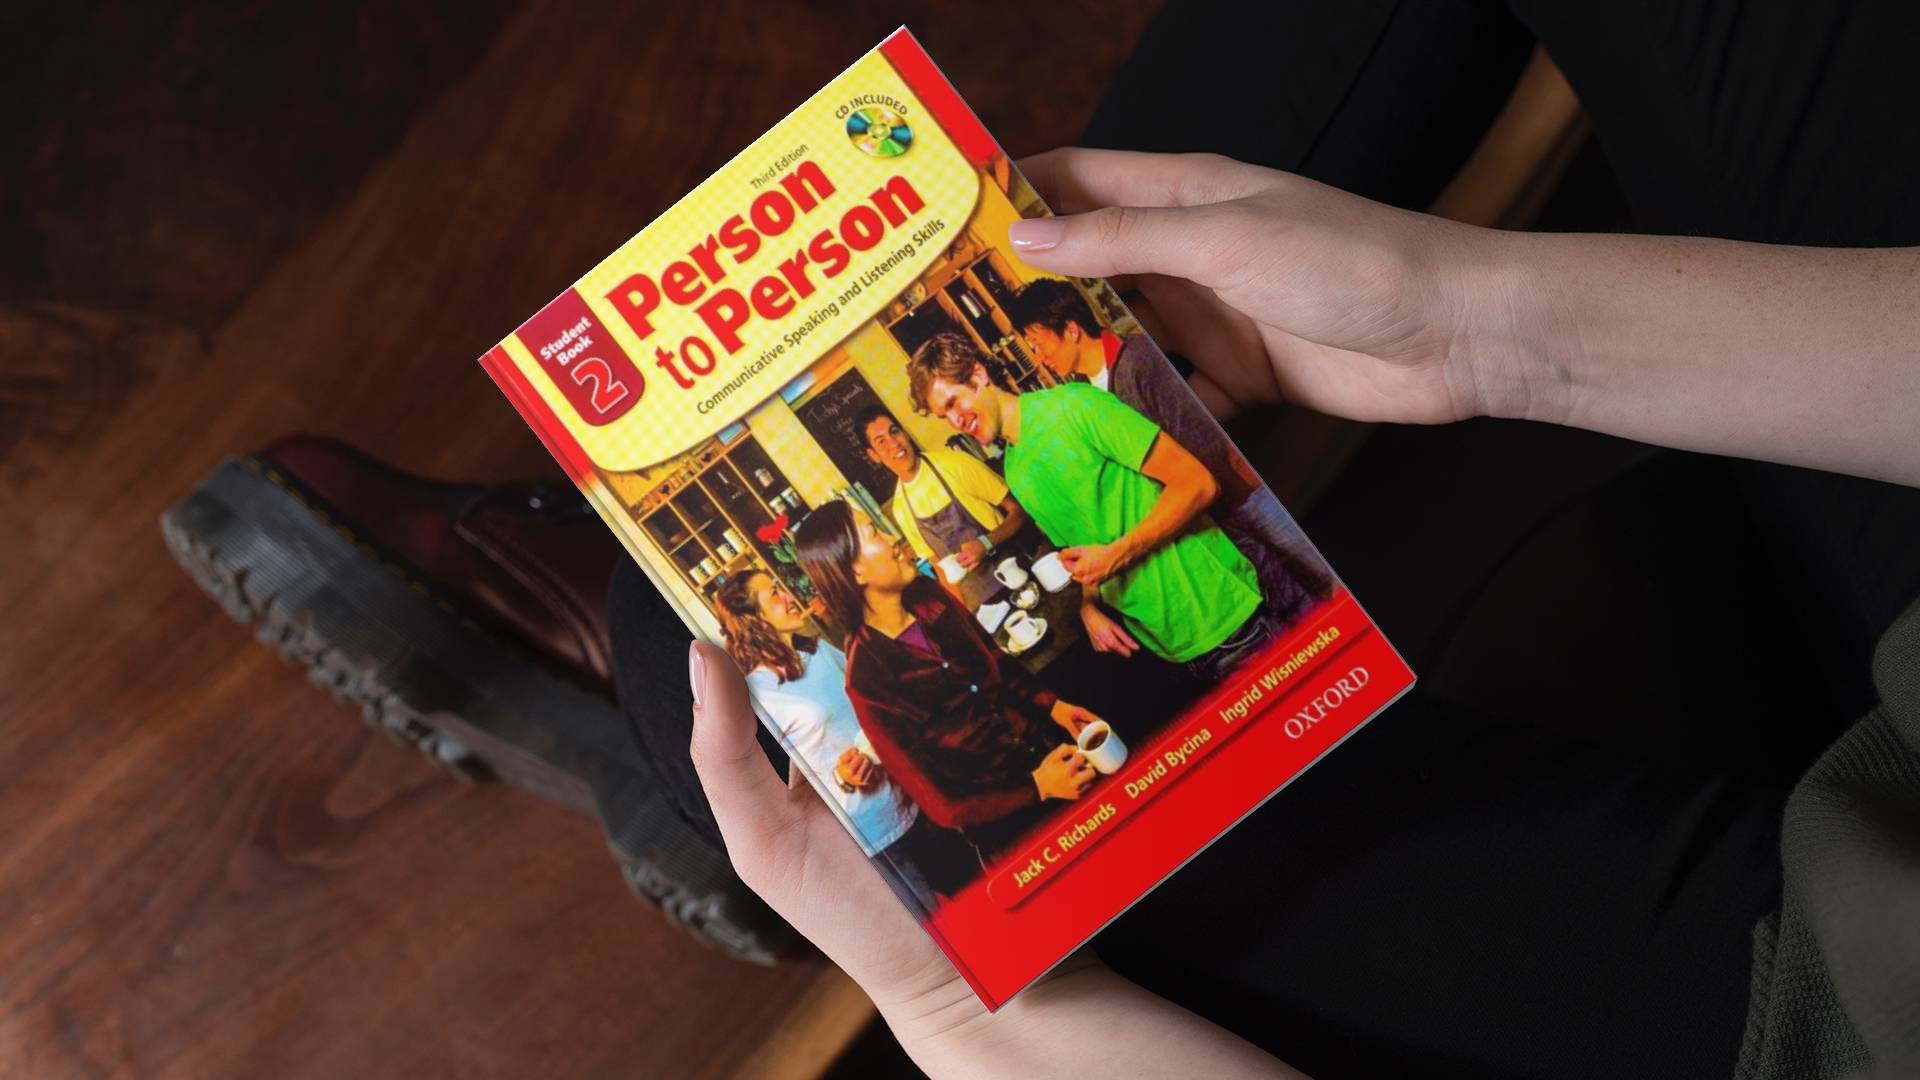 خرید کتاب زبان | فروشگاه اینترنتی کتاب زبان | Person To Person 2 Third Edition | پرسون تو پرسون دو ویرایش سوم